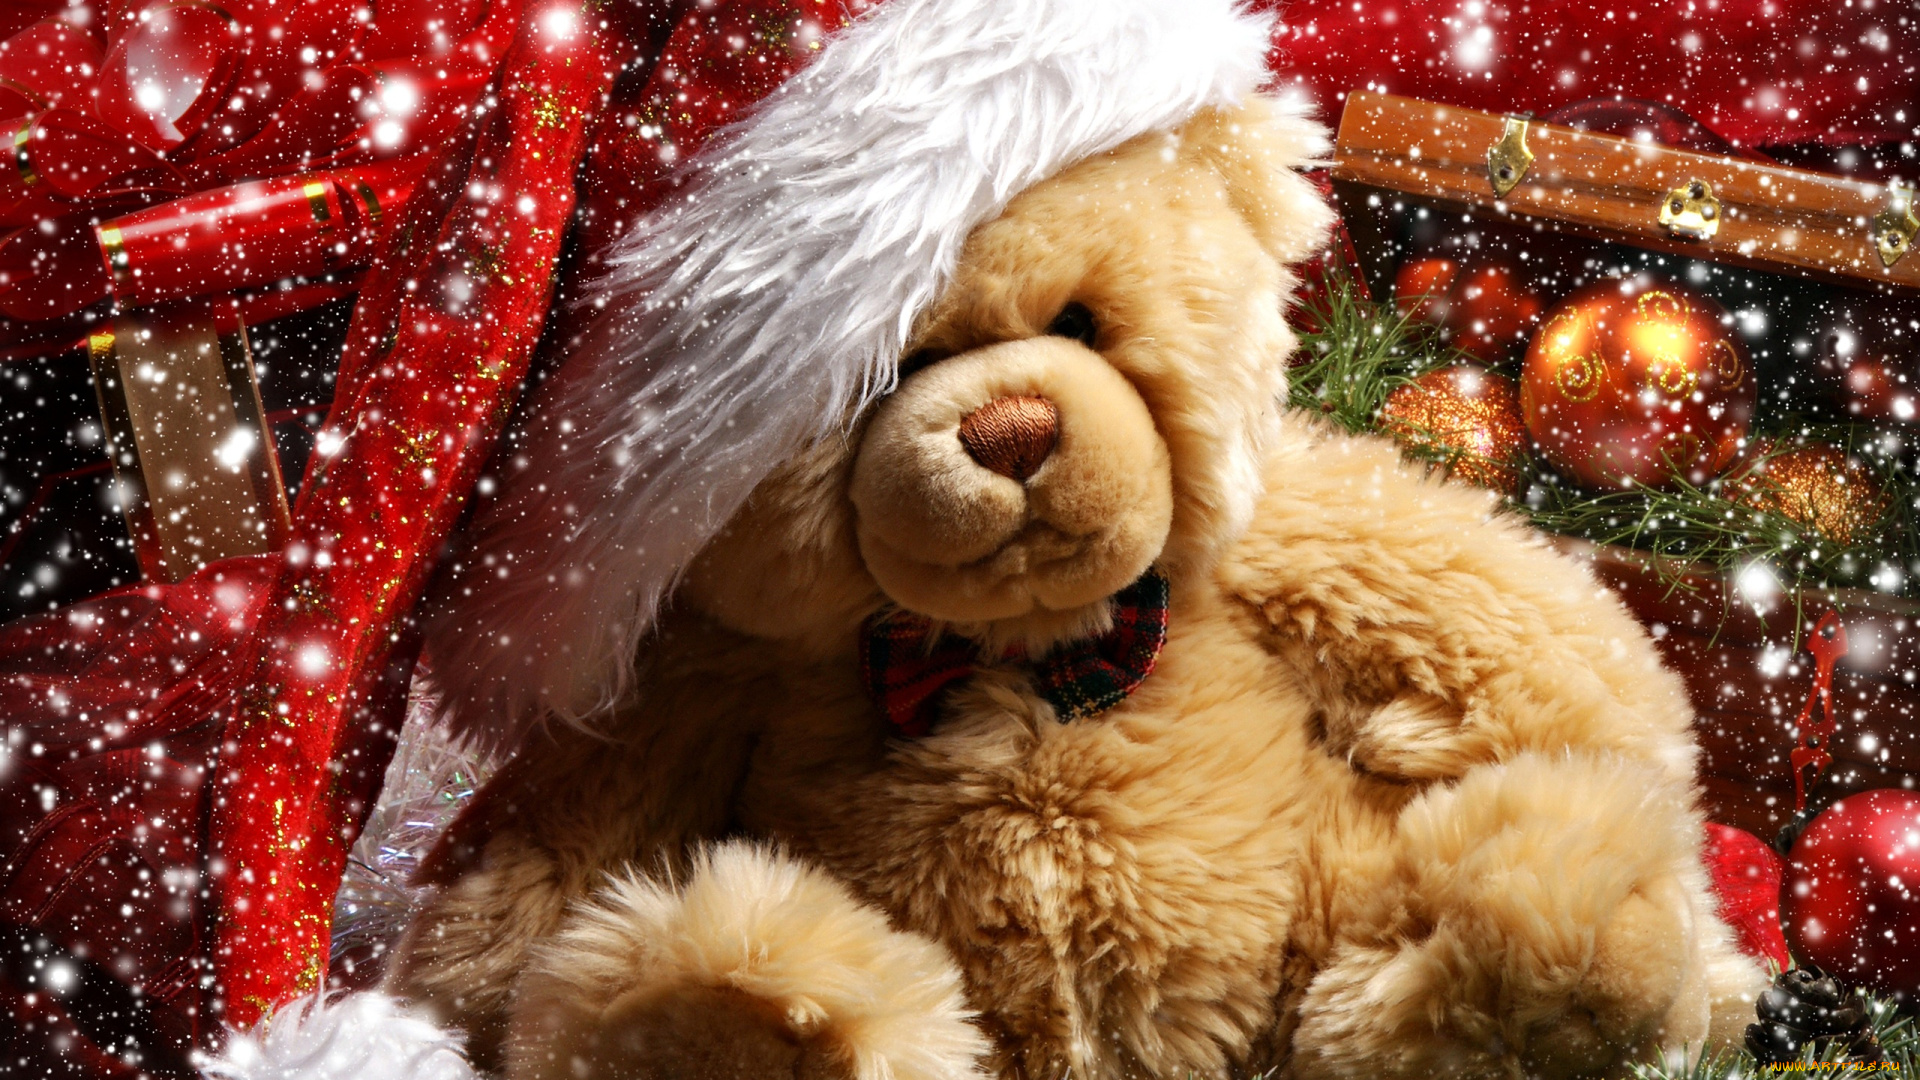 teddy, bear, праздничные, мягкие, игрушки, новый, год, рождество, подарок, украшения, шары, снег, медвежонок